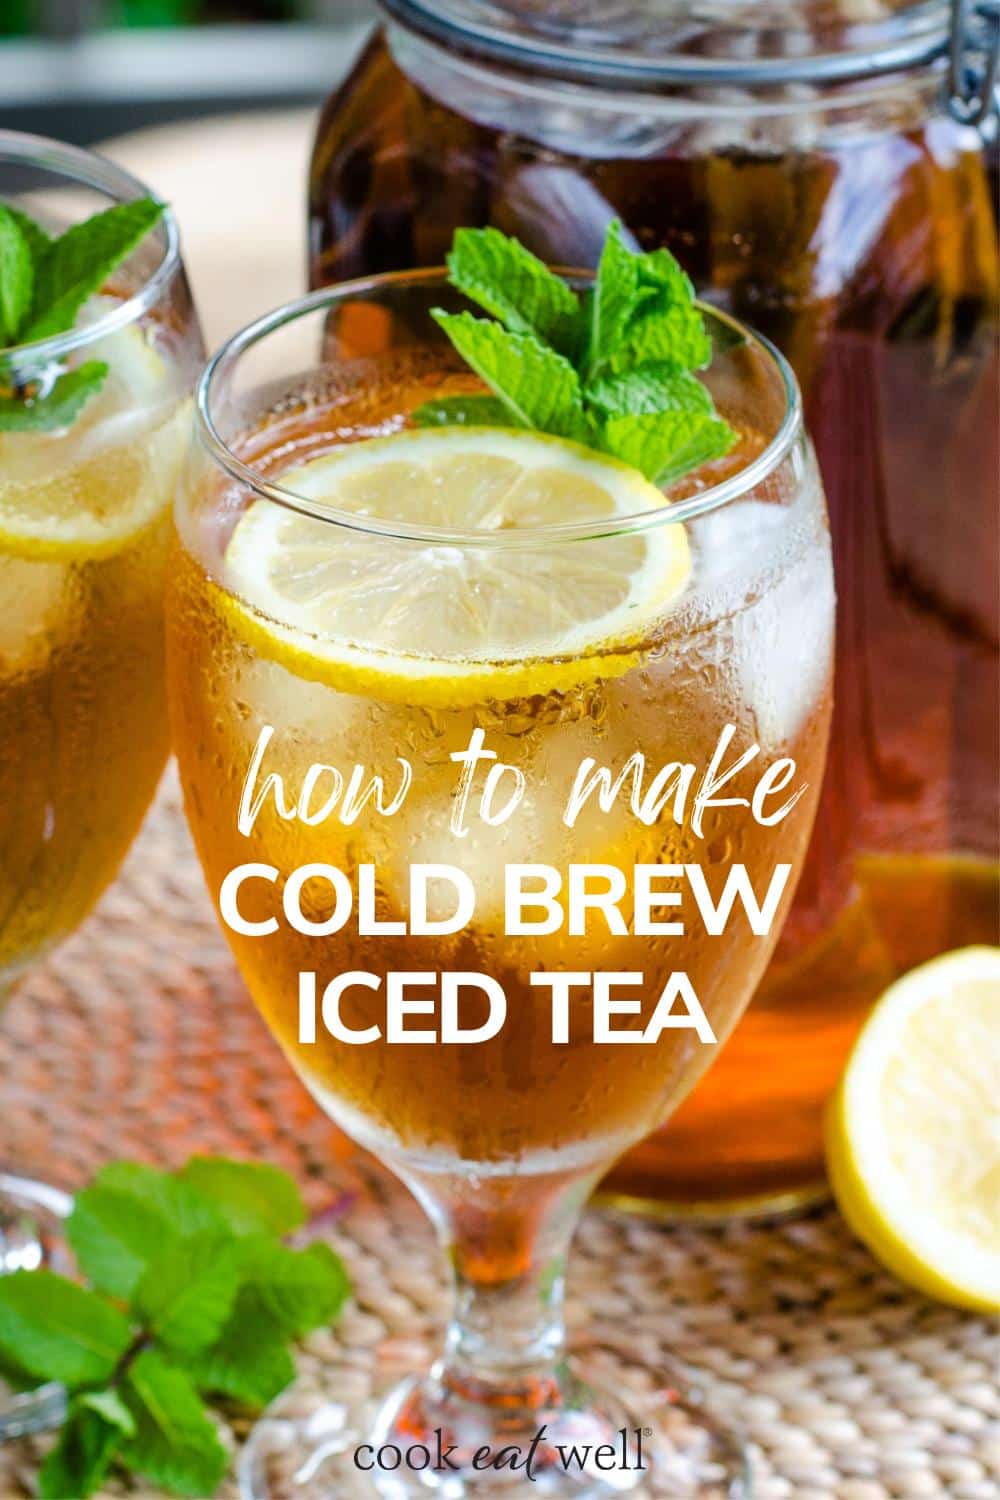 Jak zrobić mrożoną herbatę na zimno